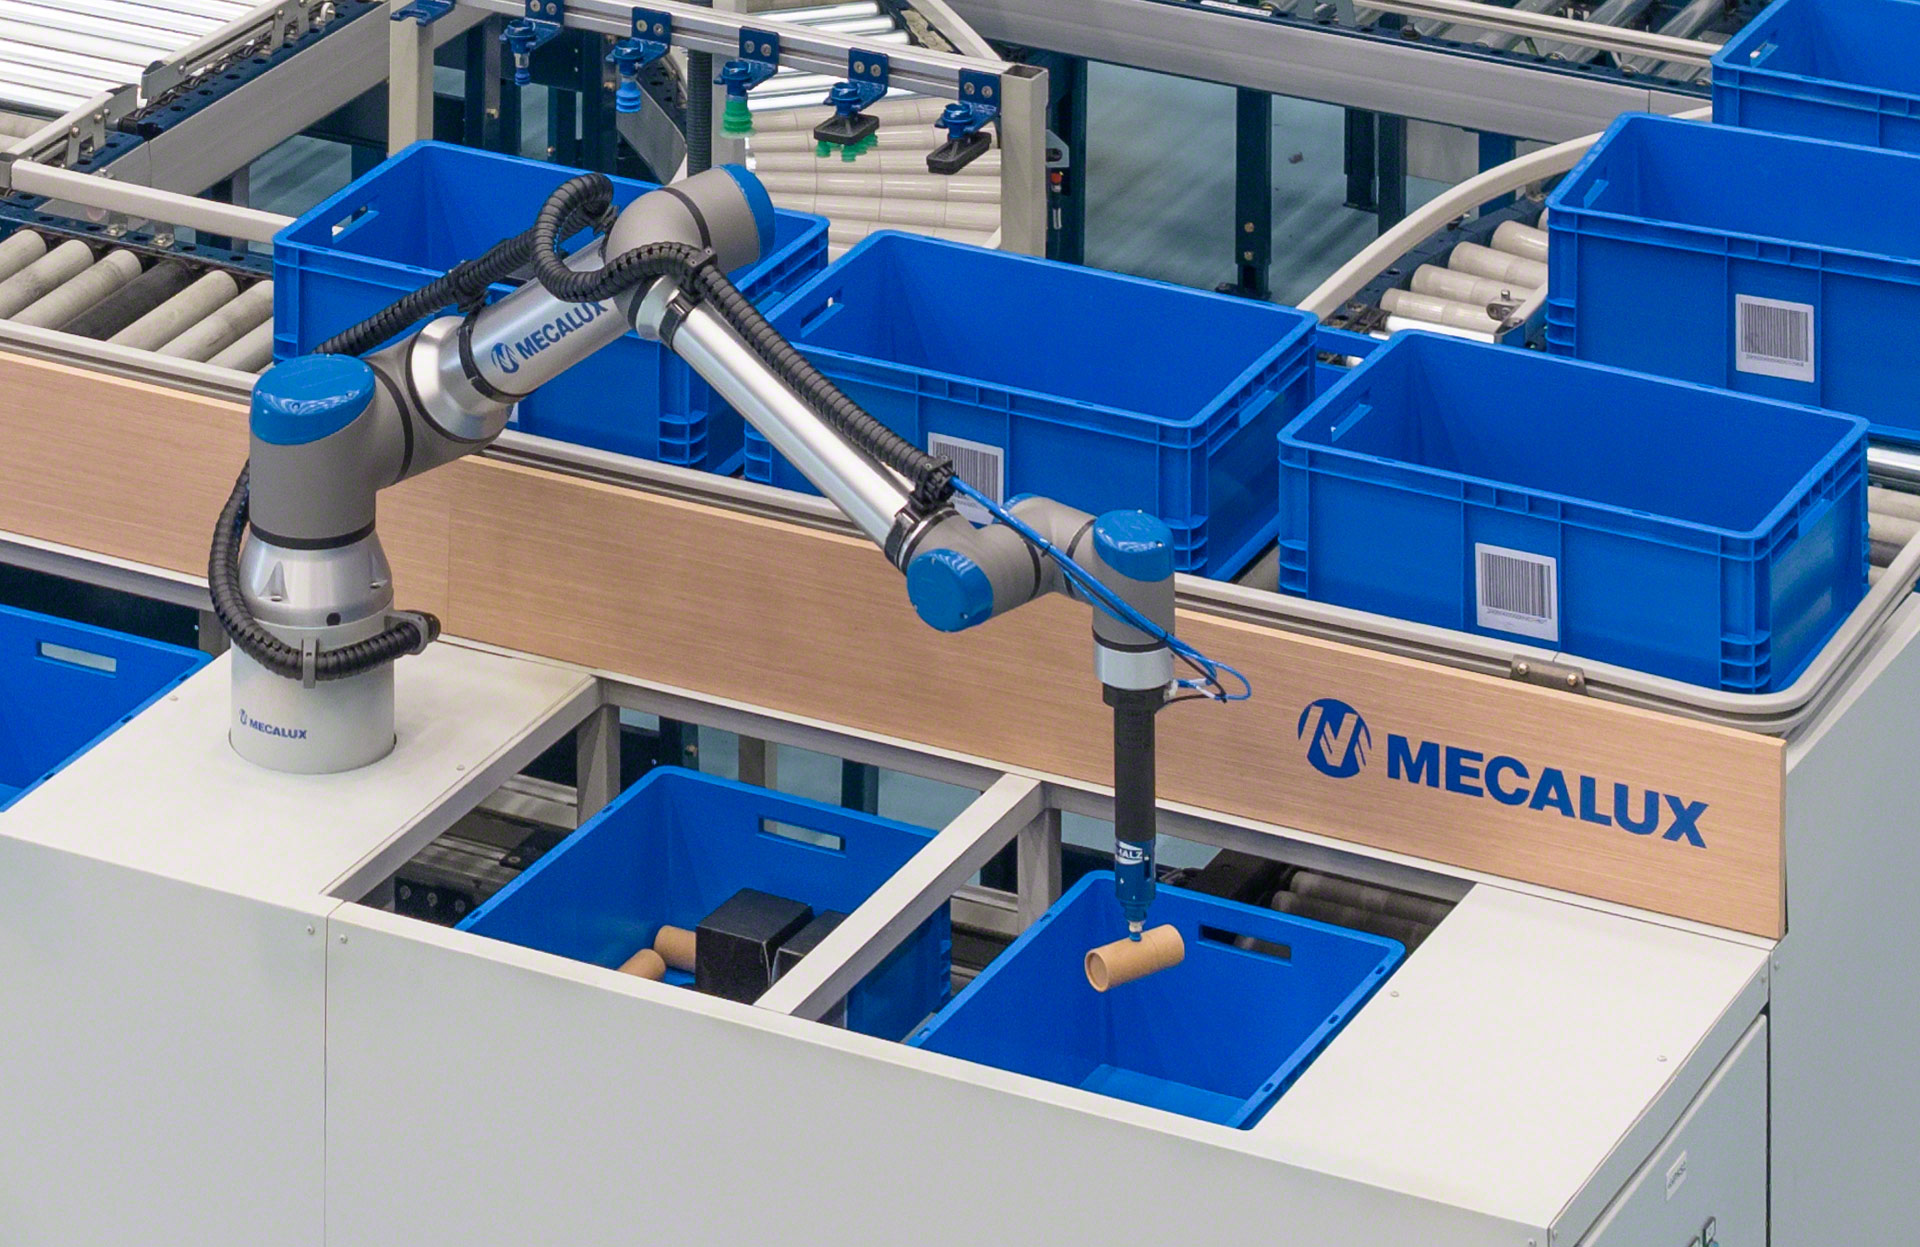 Le robot de picking de Mecalux assure une préparation des commandes entièrement automatisée